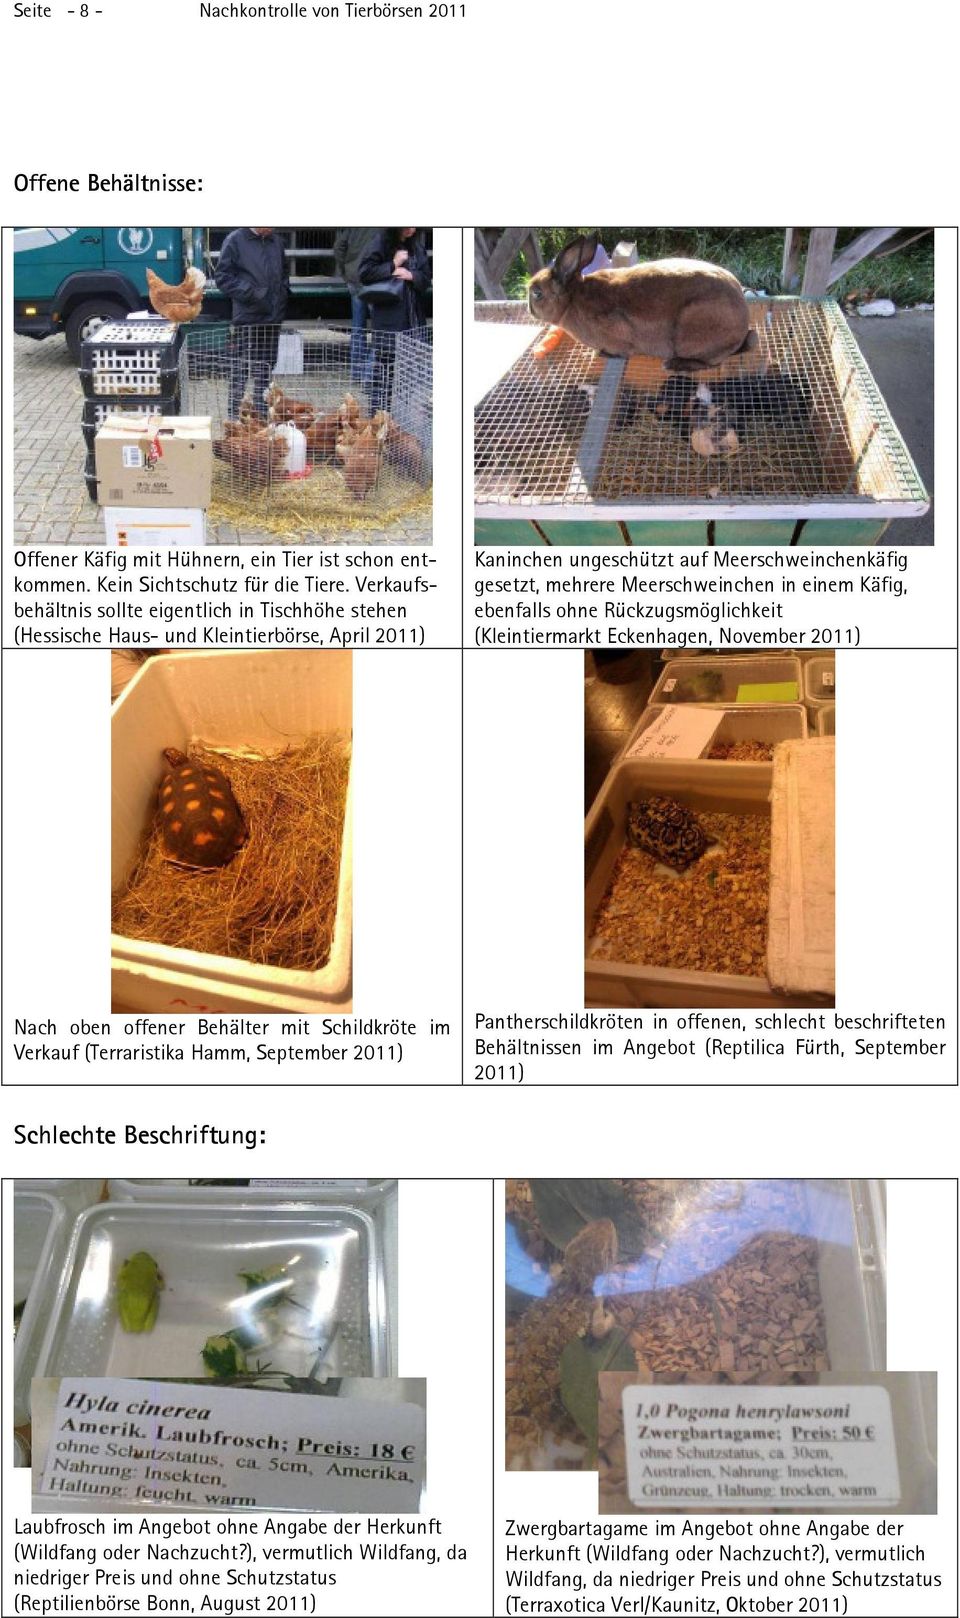 Käfig, ebenfalls ohne Rückzugsmöglichkeit Nach oben offener Behälter mit Schildkröte im Verkauf (Terraristika Hamm, September 2011) Pantherschildkröten in offenen, schlecht beschrifteten Behältnissen